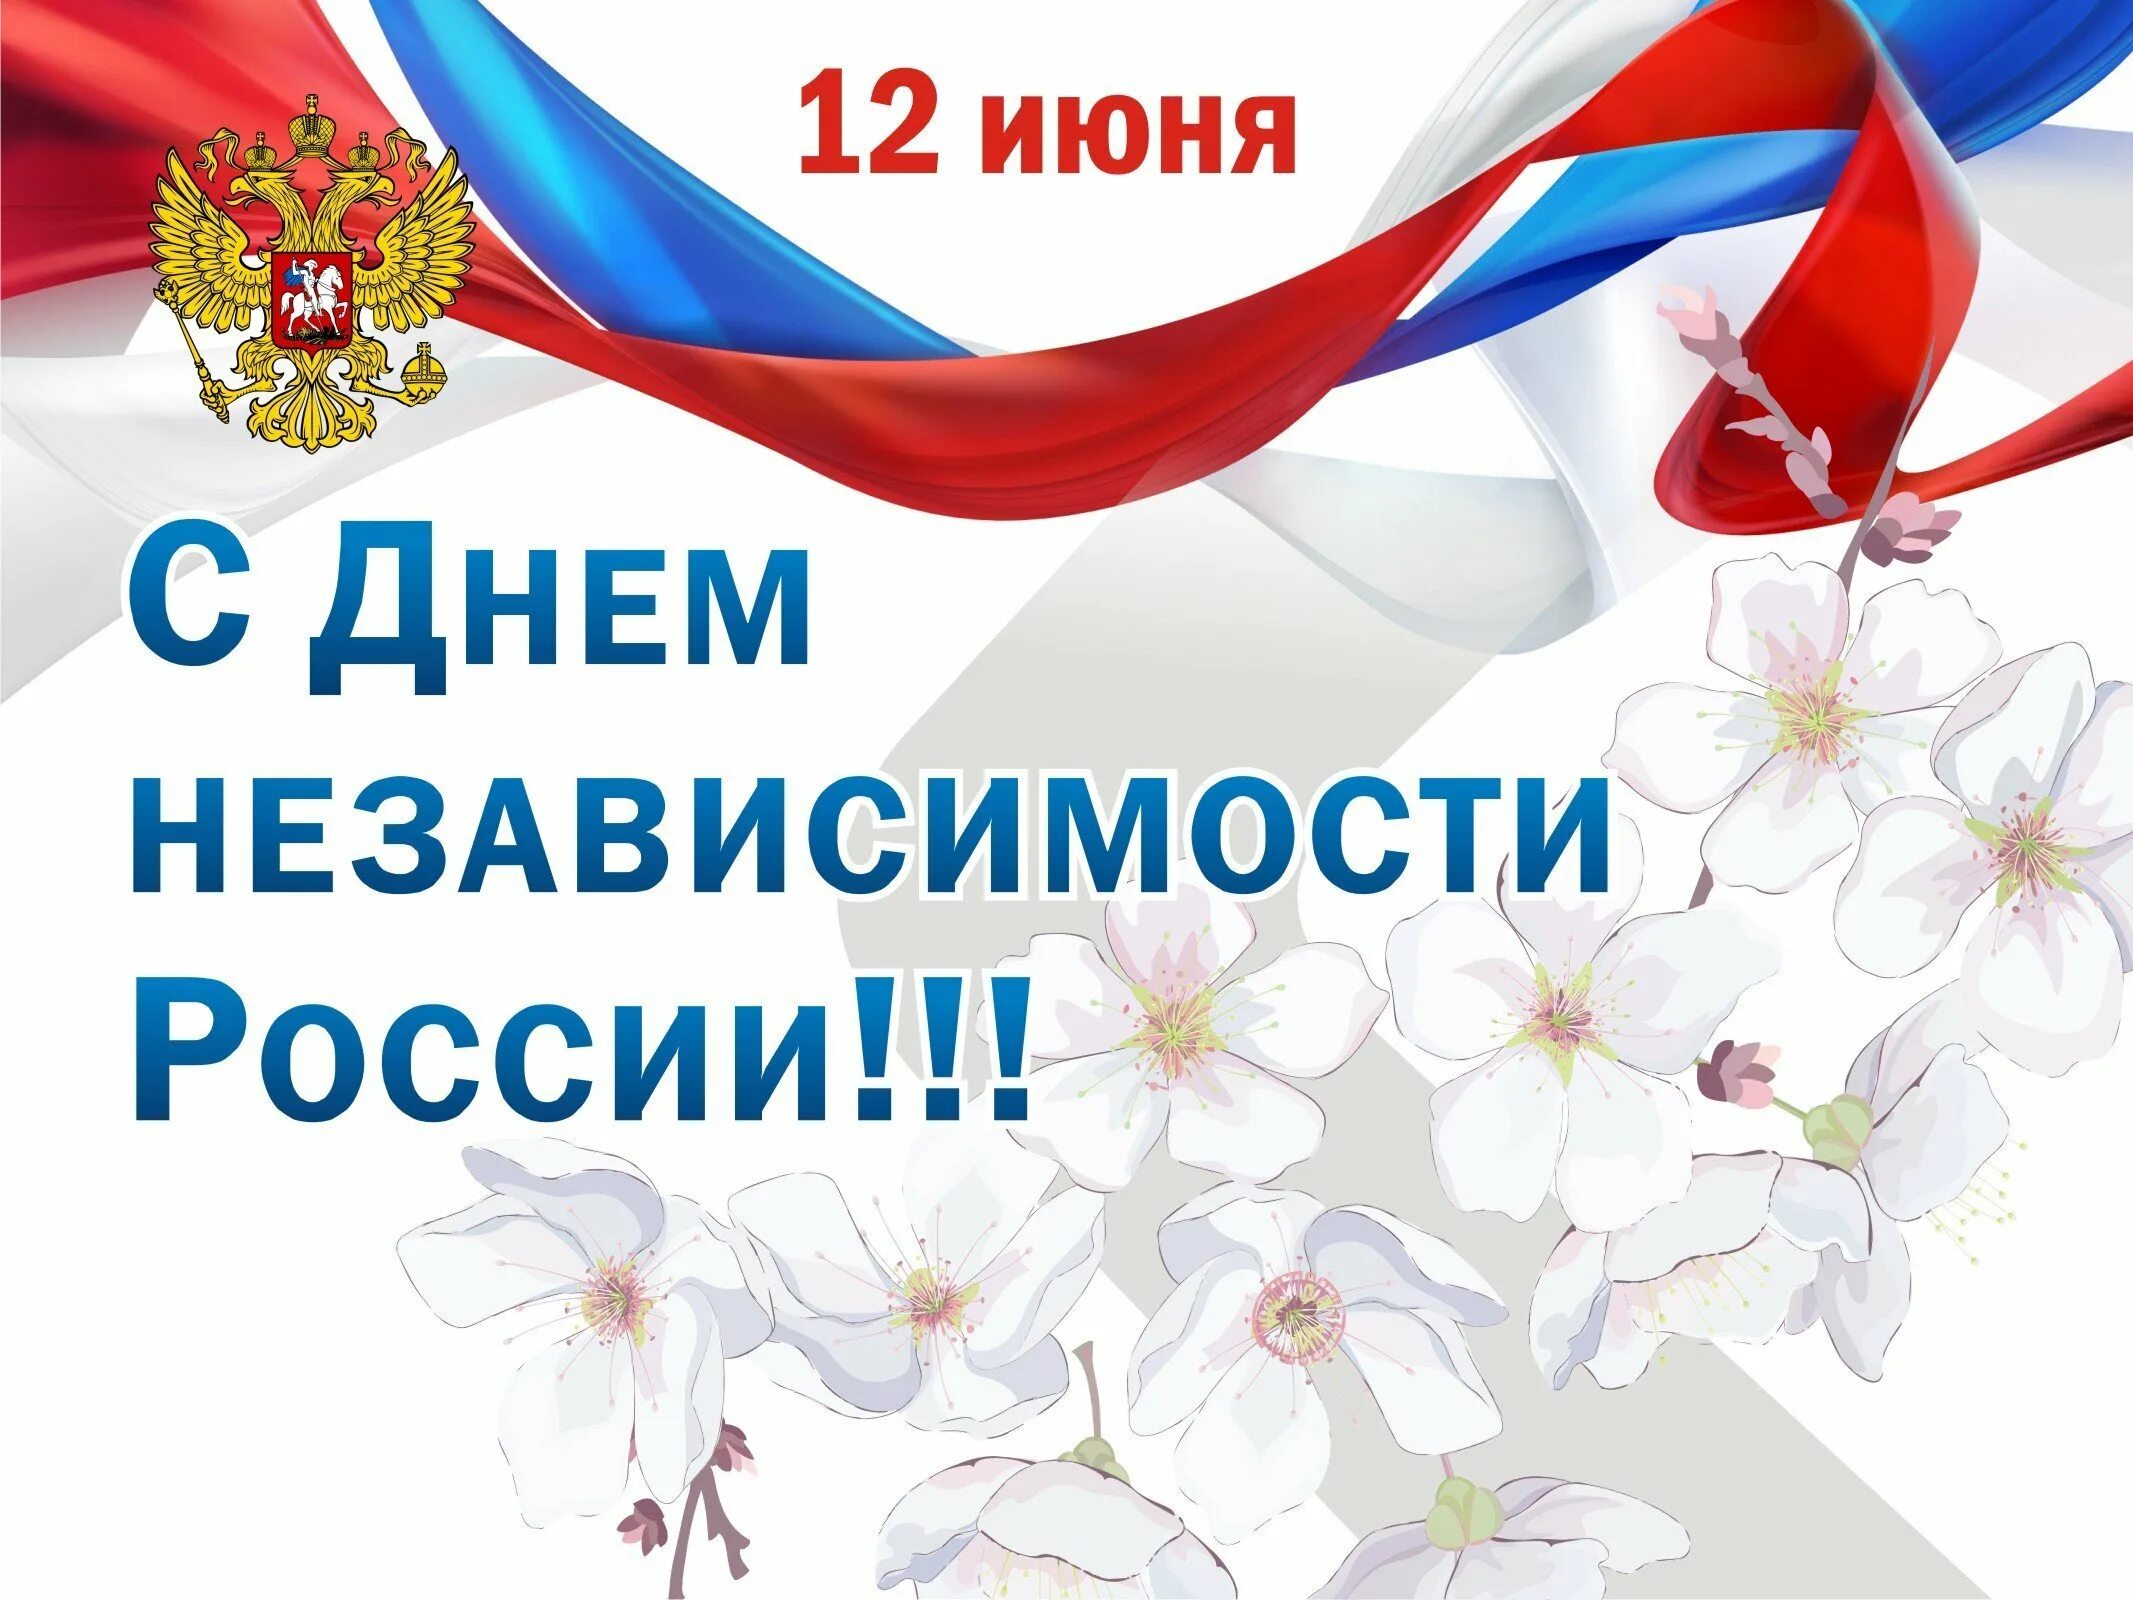 12 июня календарь. Поздравления с днём рос. Поздравление с дне Росс. Поздравление с 12 июня. День независимости России.